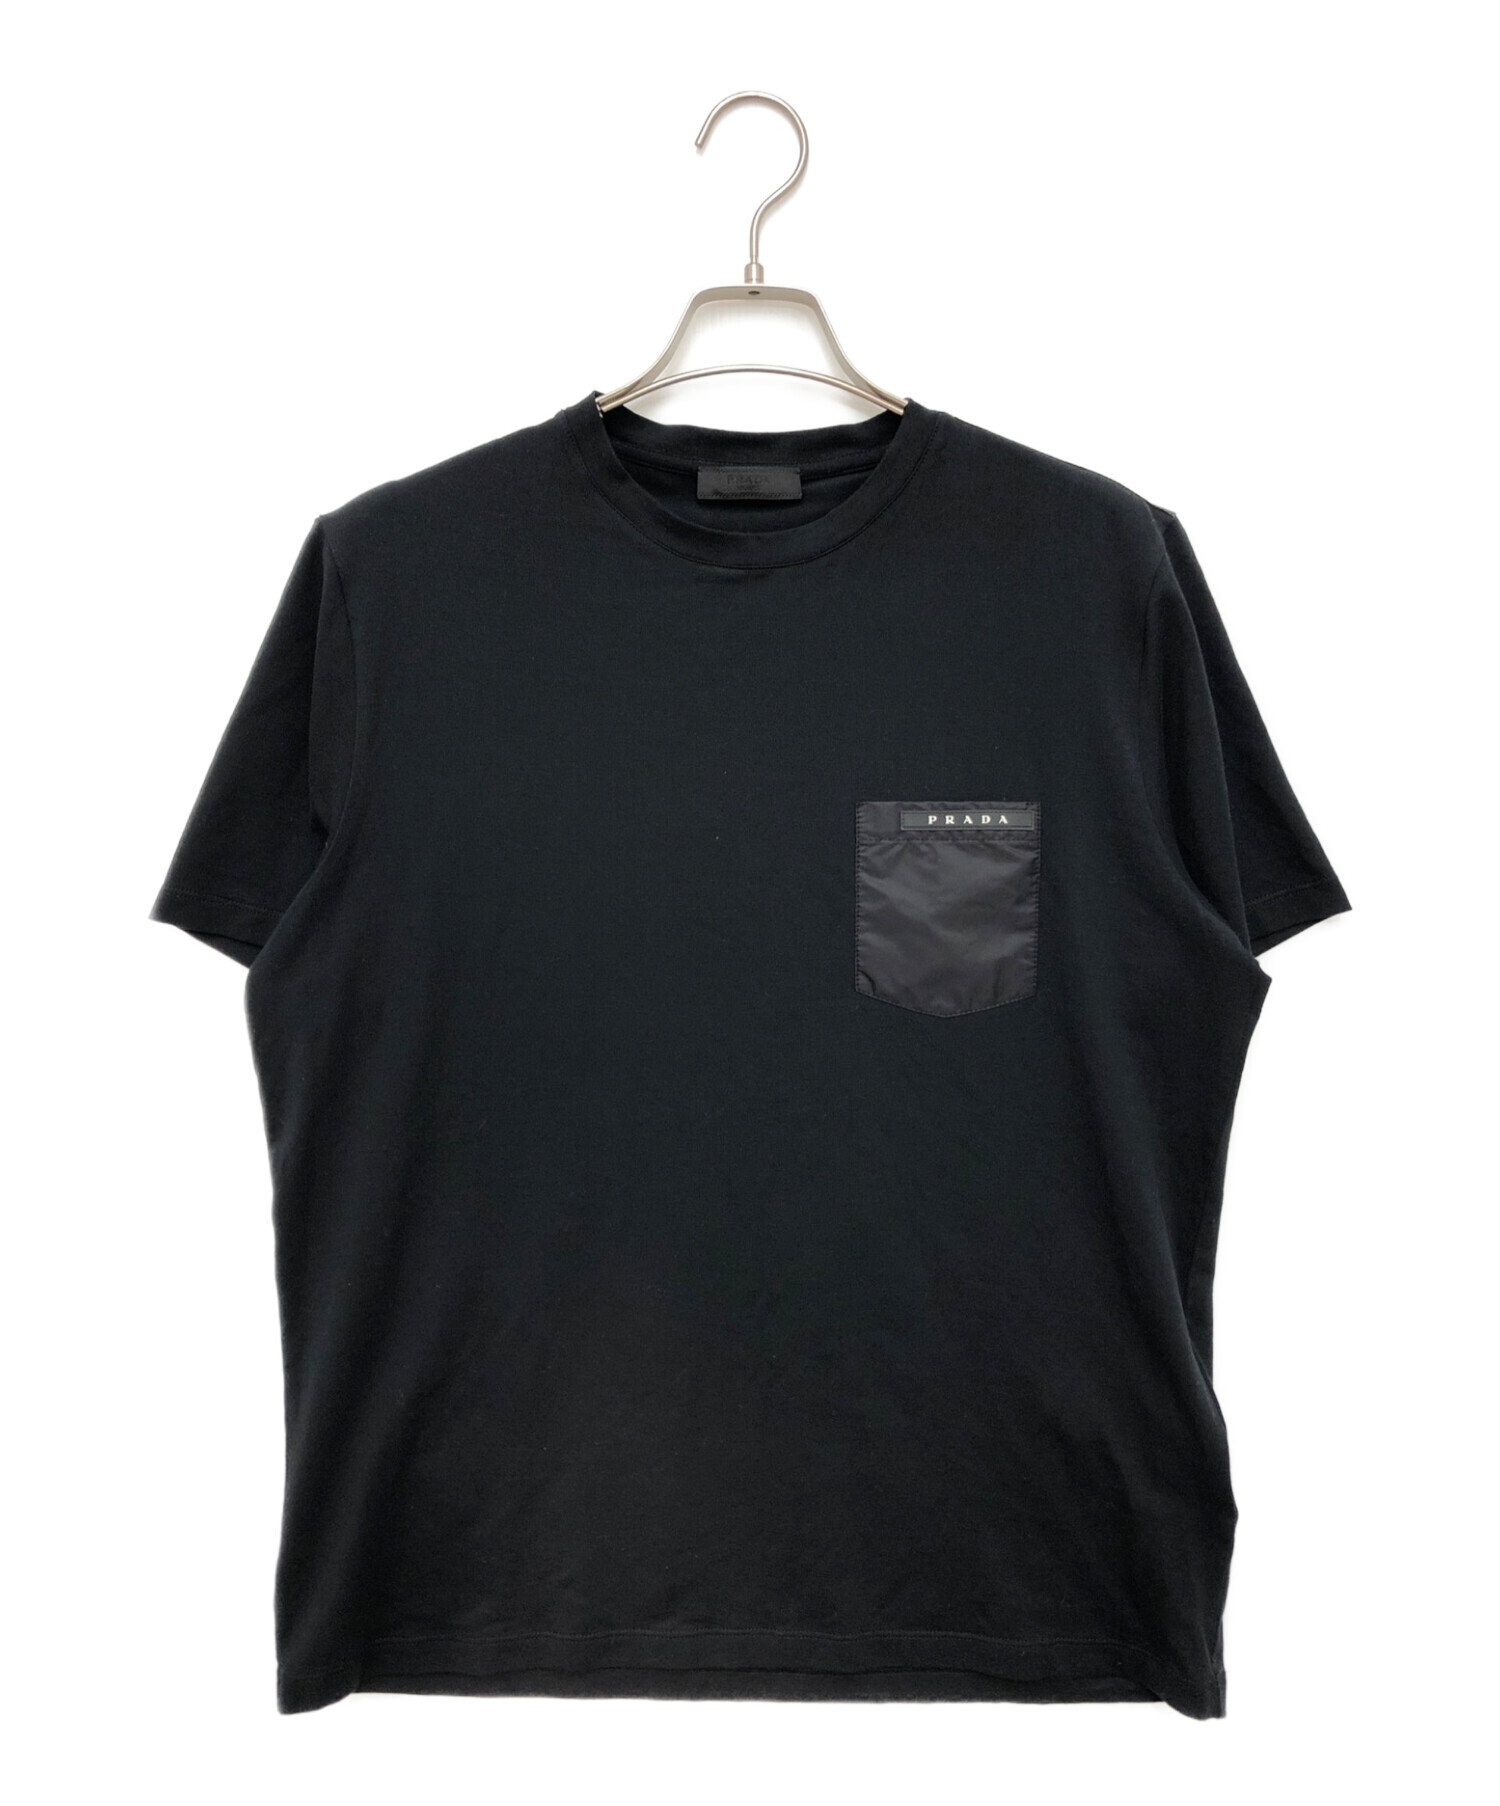 10,904円プラダ PRADA Tシャツ Lサイズ ブラック